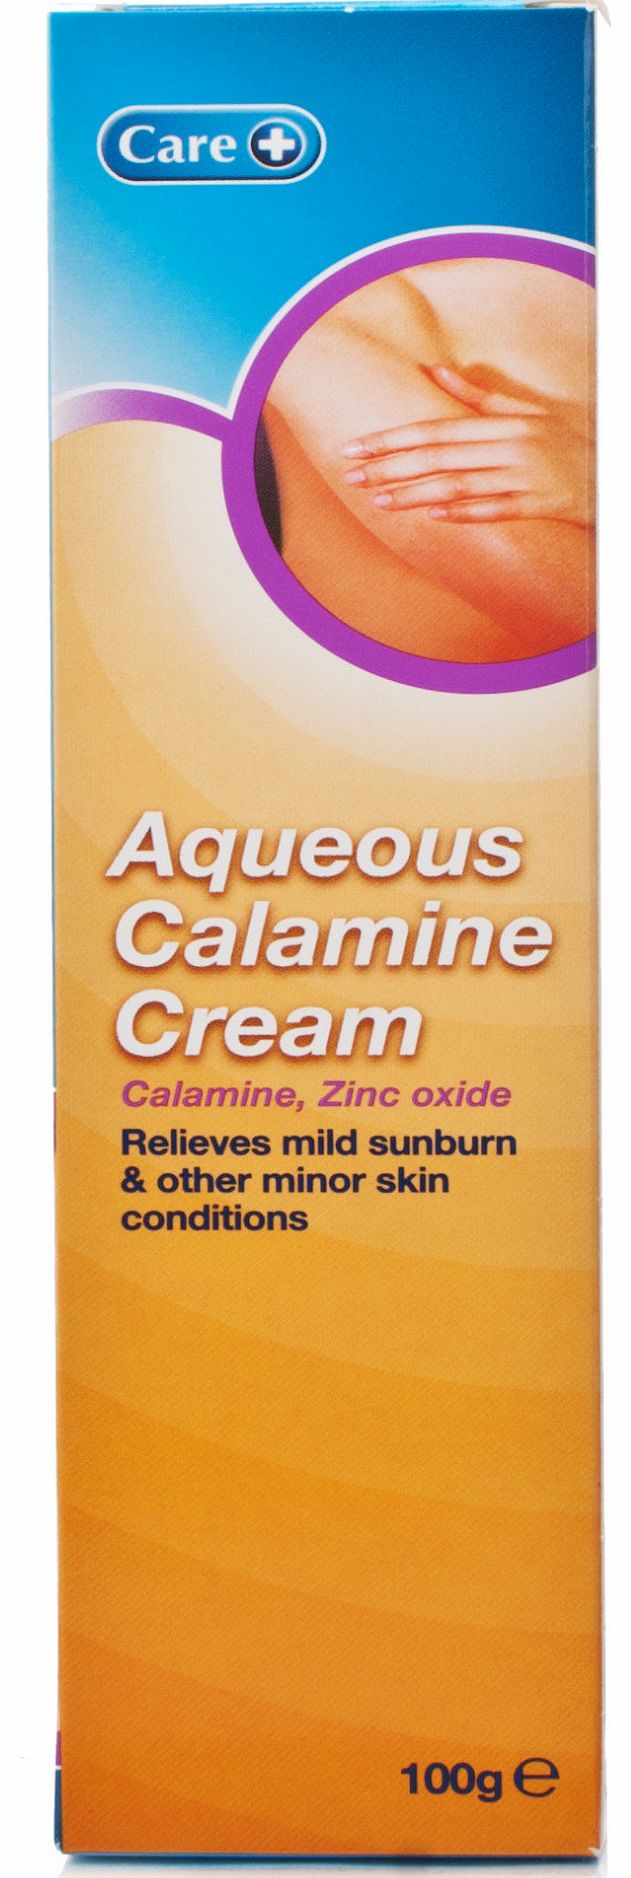 Care   Aqueous Calamine Cream